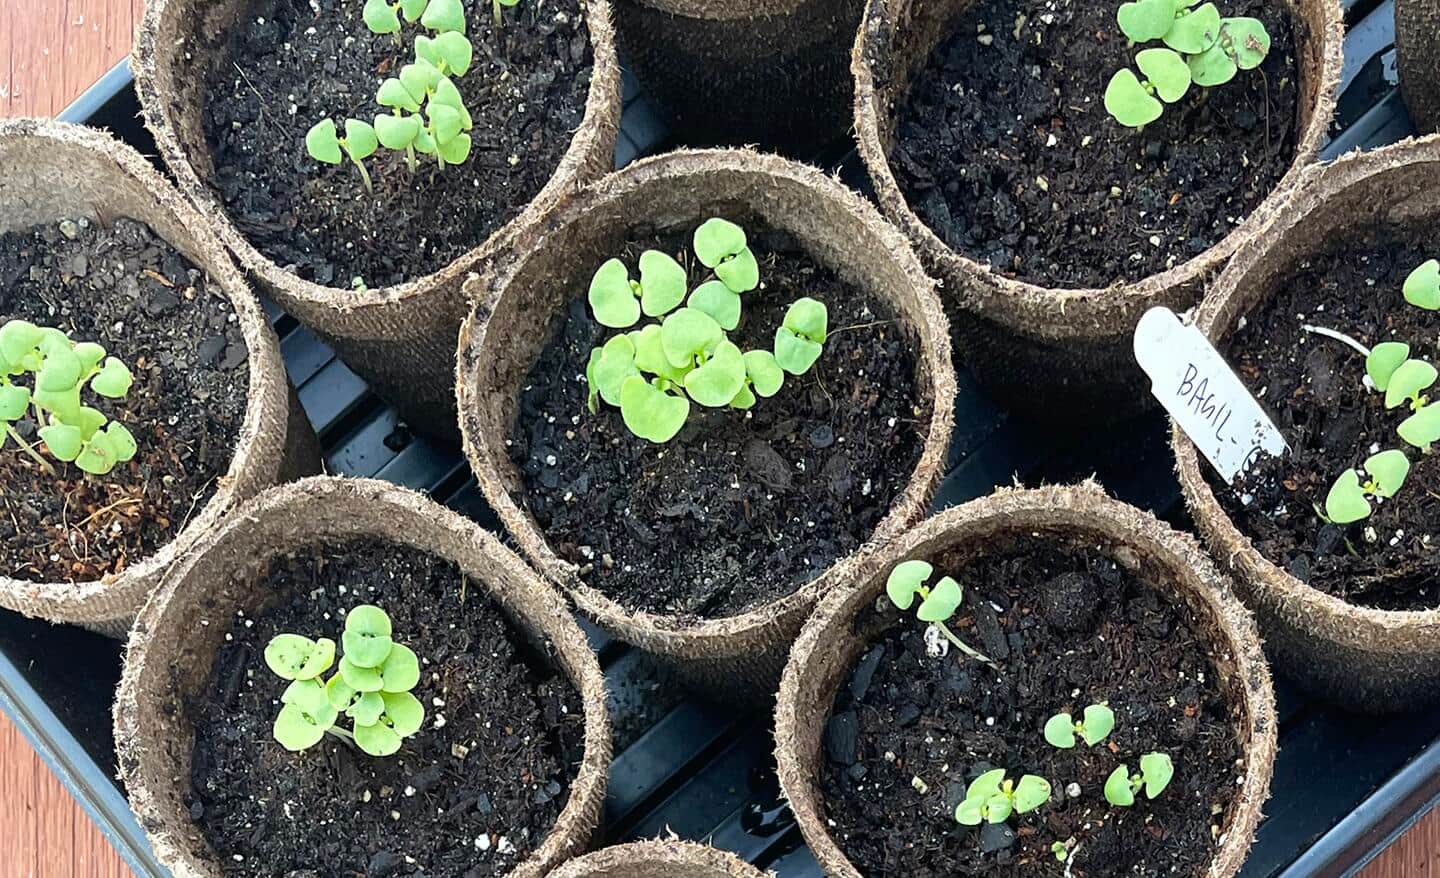 Seedlings growing in peat cups